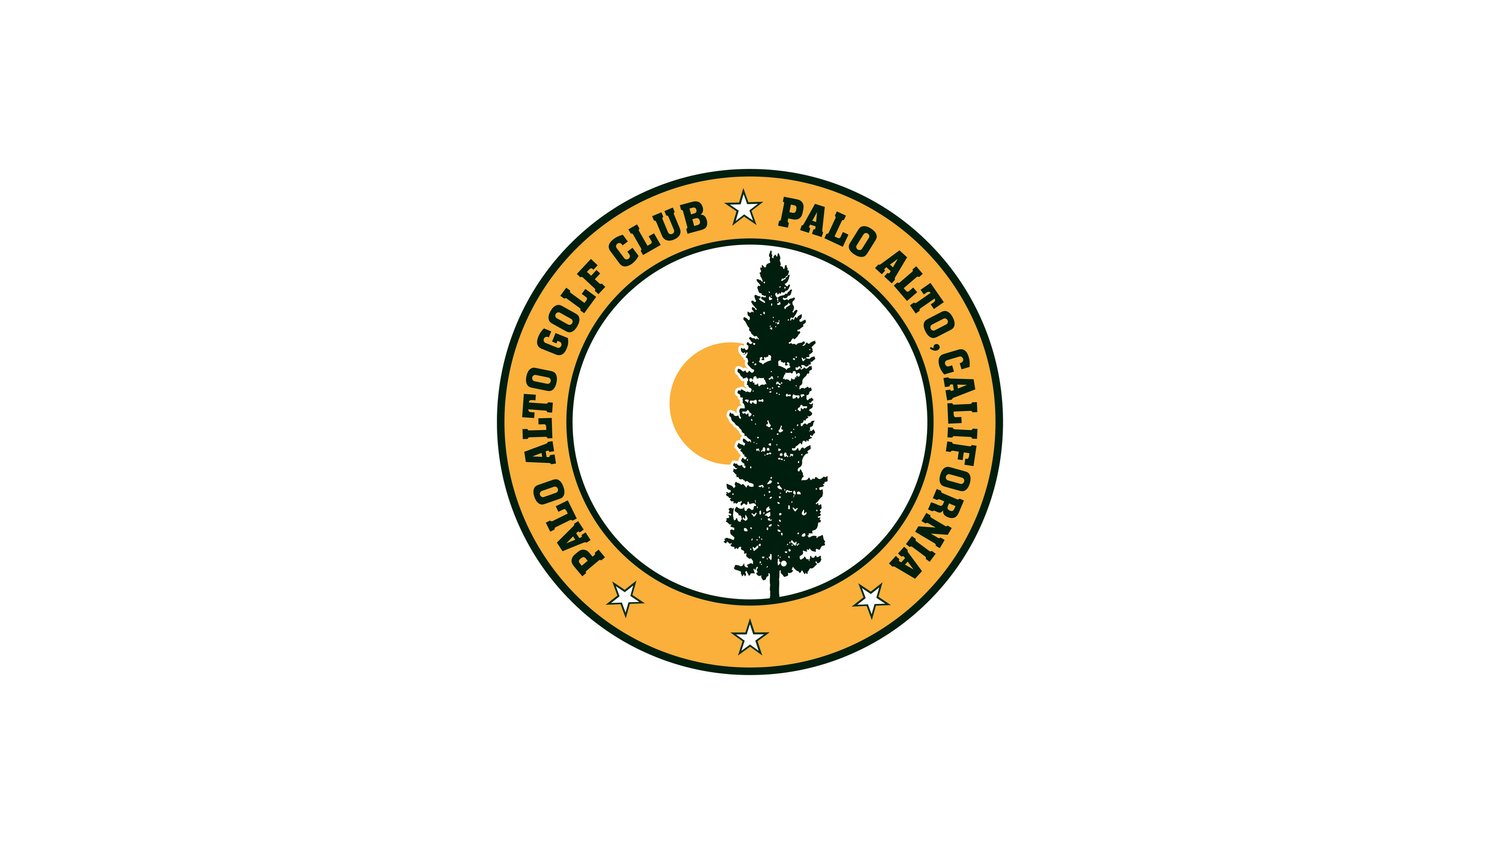 Palo Alto Golf Club